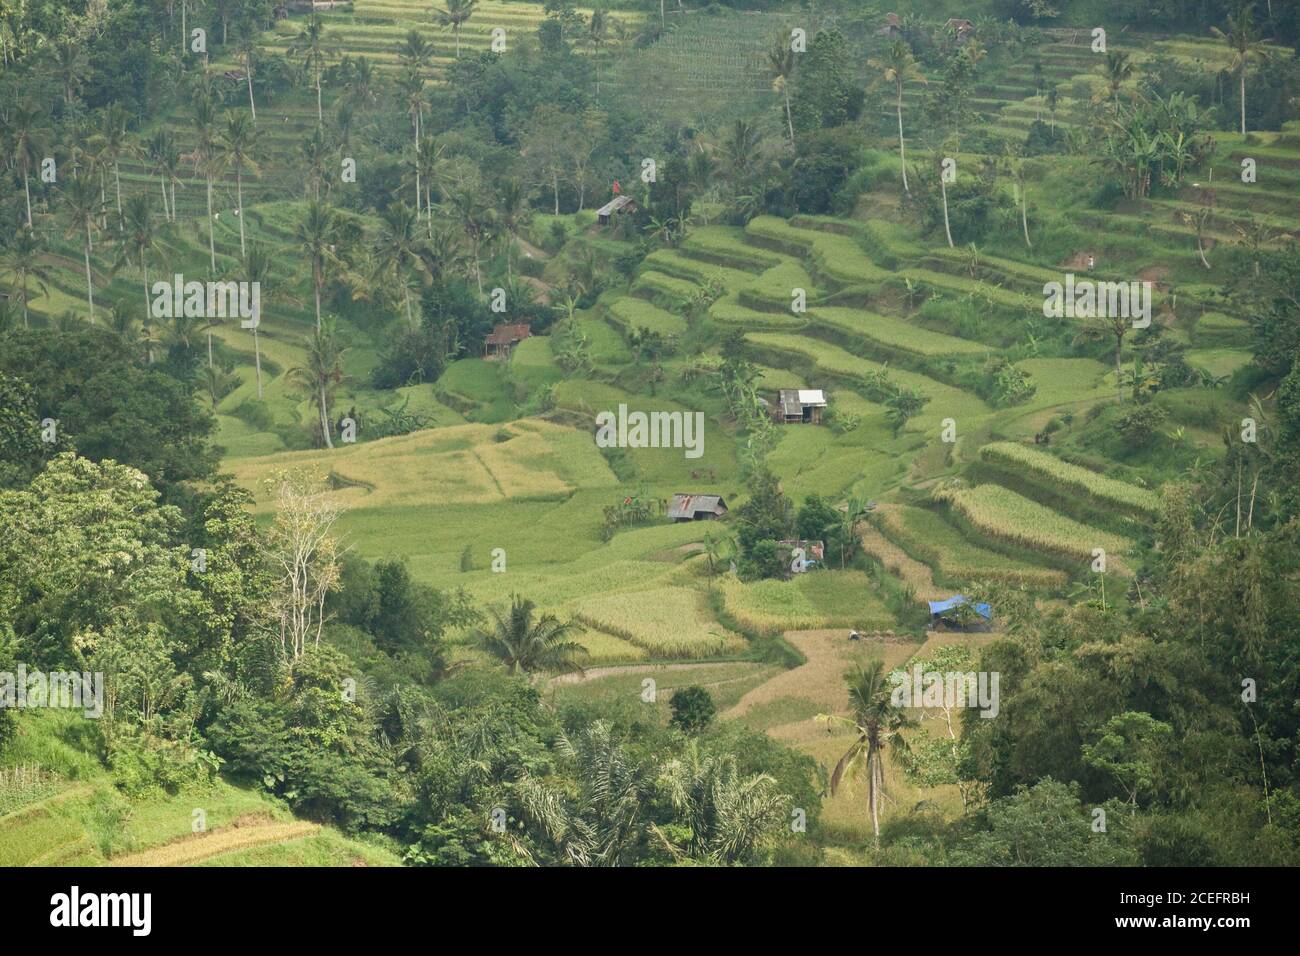 Vue du dessus des marches du sol entre la jungle verte humide En Indonésie, jour ensoleillé Banque D'Images